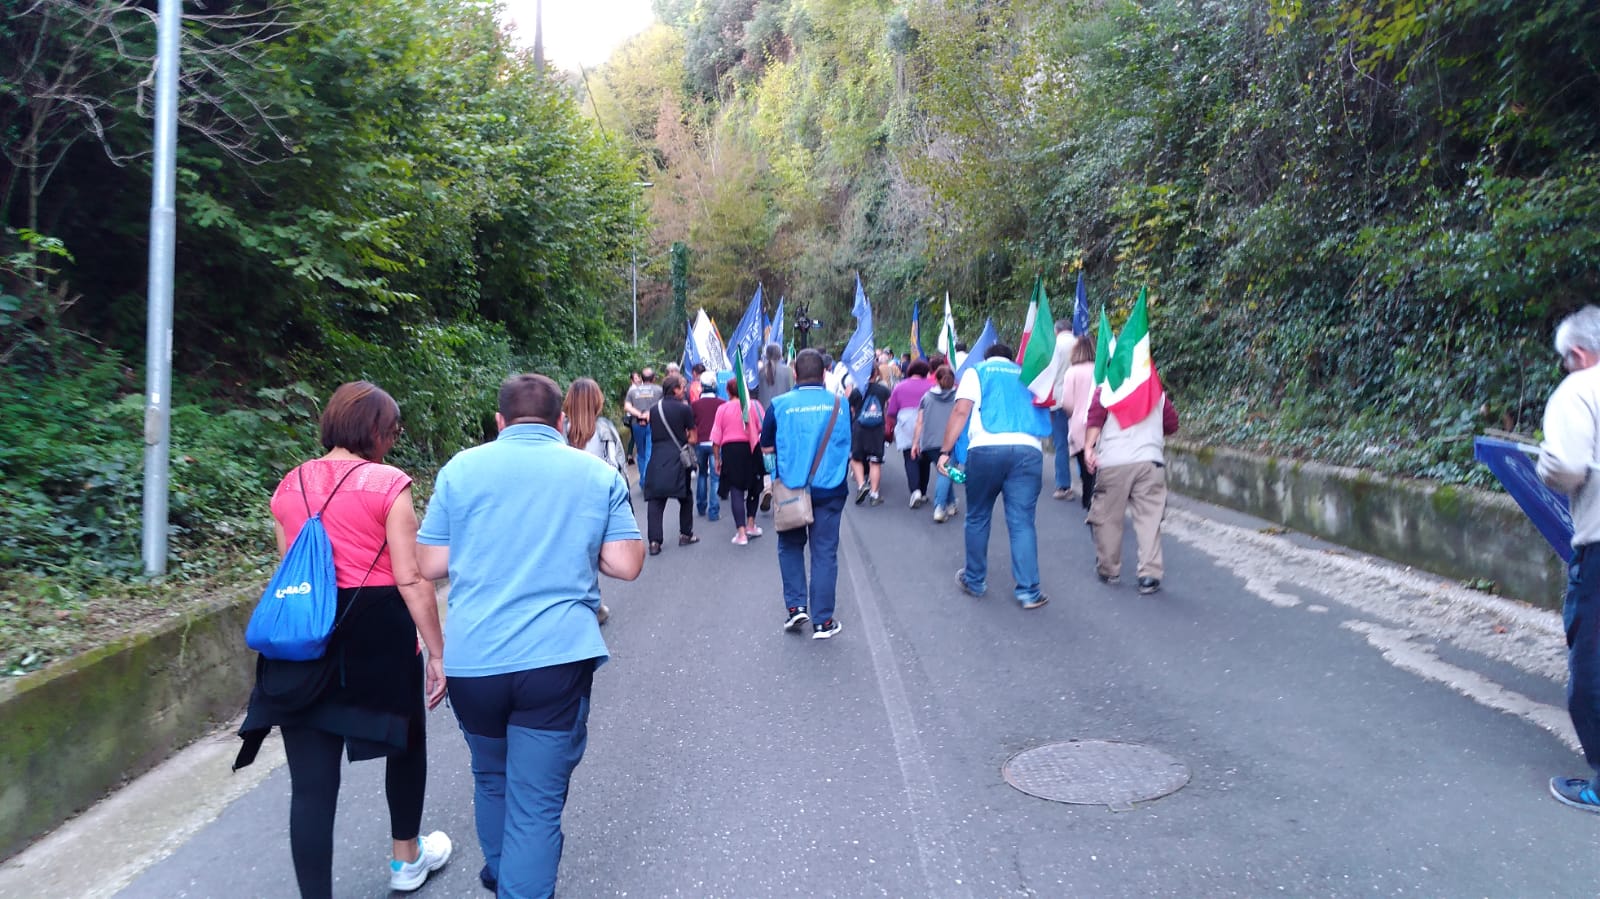 Campagnano di Roma, XI marcia internazionale per la libertà dei popoli e delle minoranze oppresse, 13 ottobre 2018